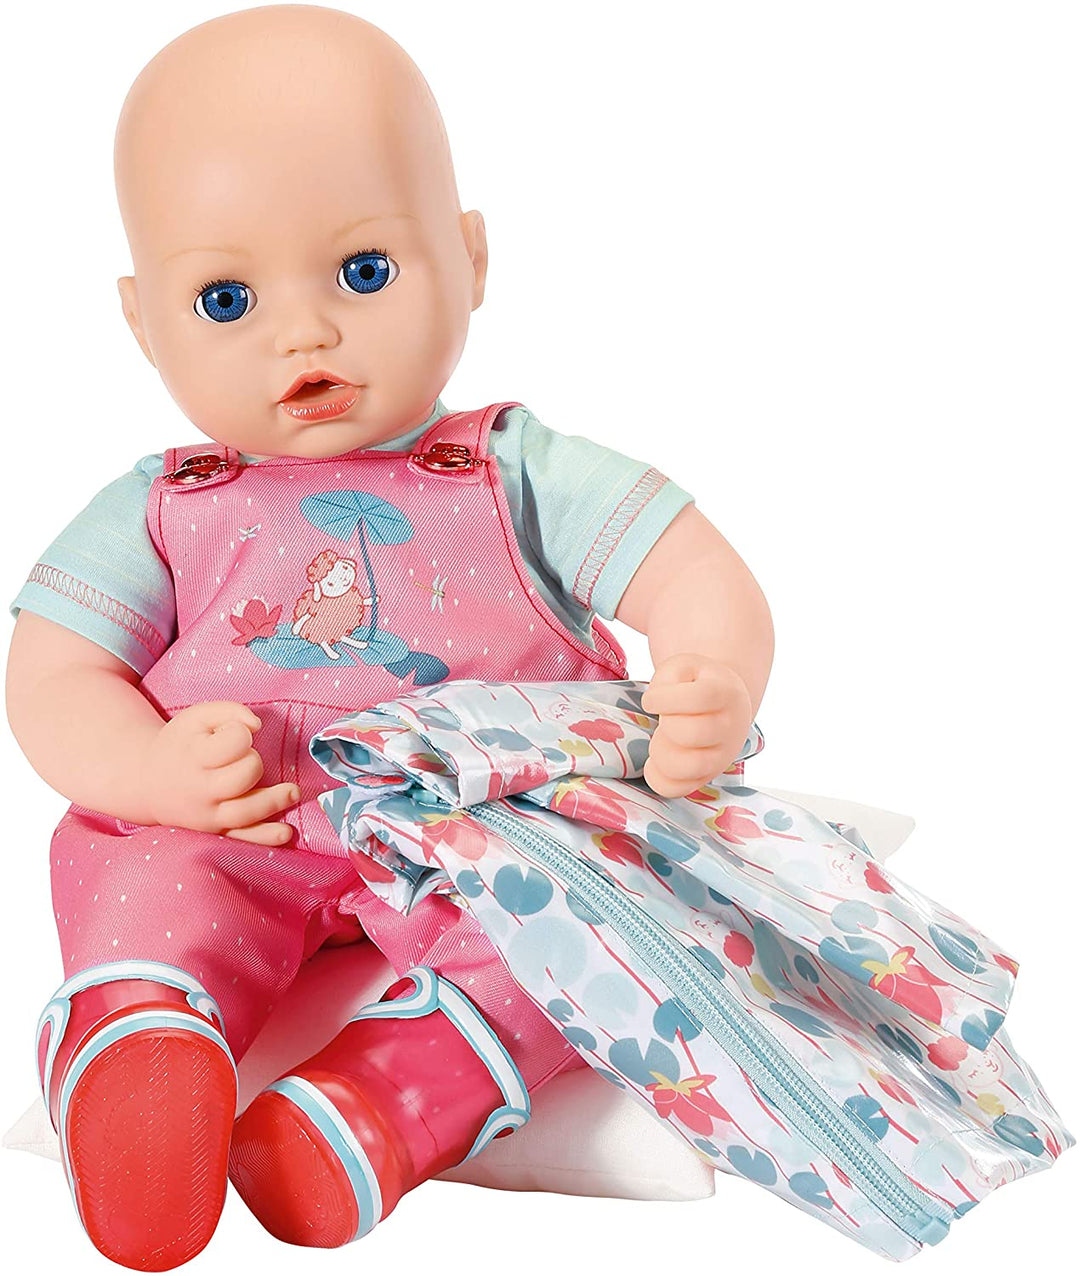 Baby Annabell Deluxe Regenset für 43 cm Puppen